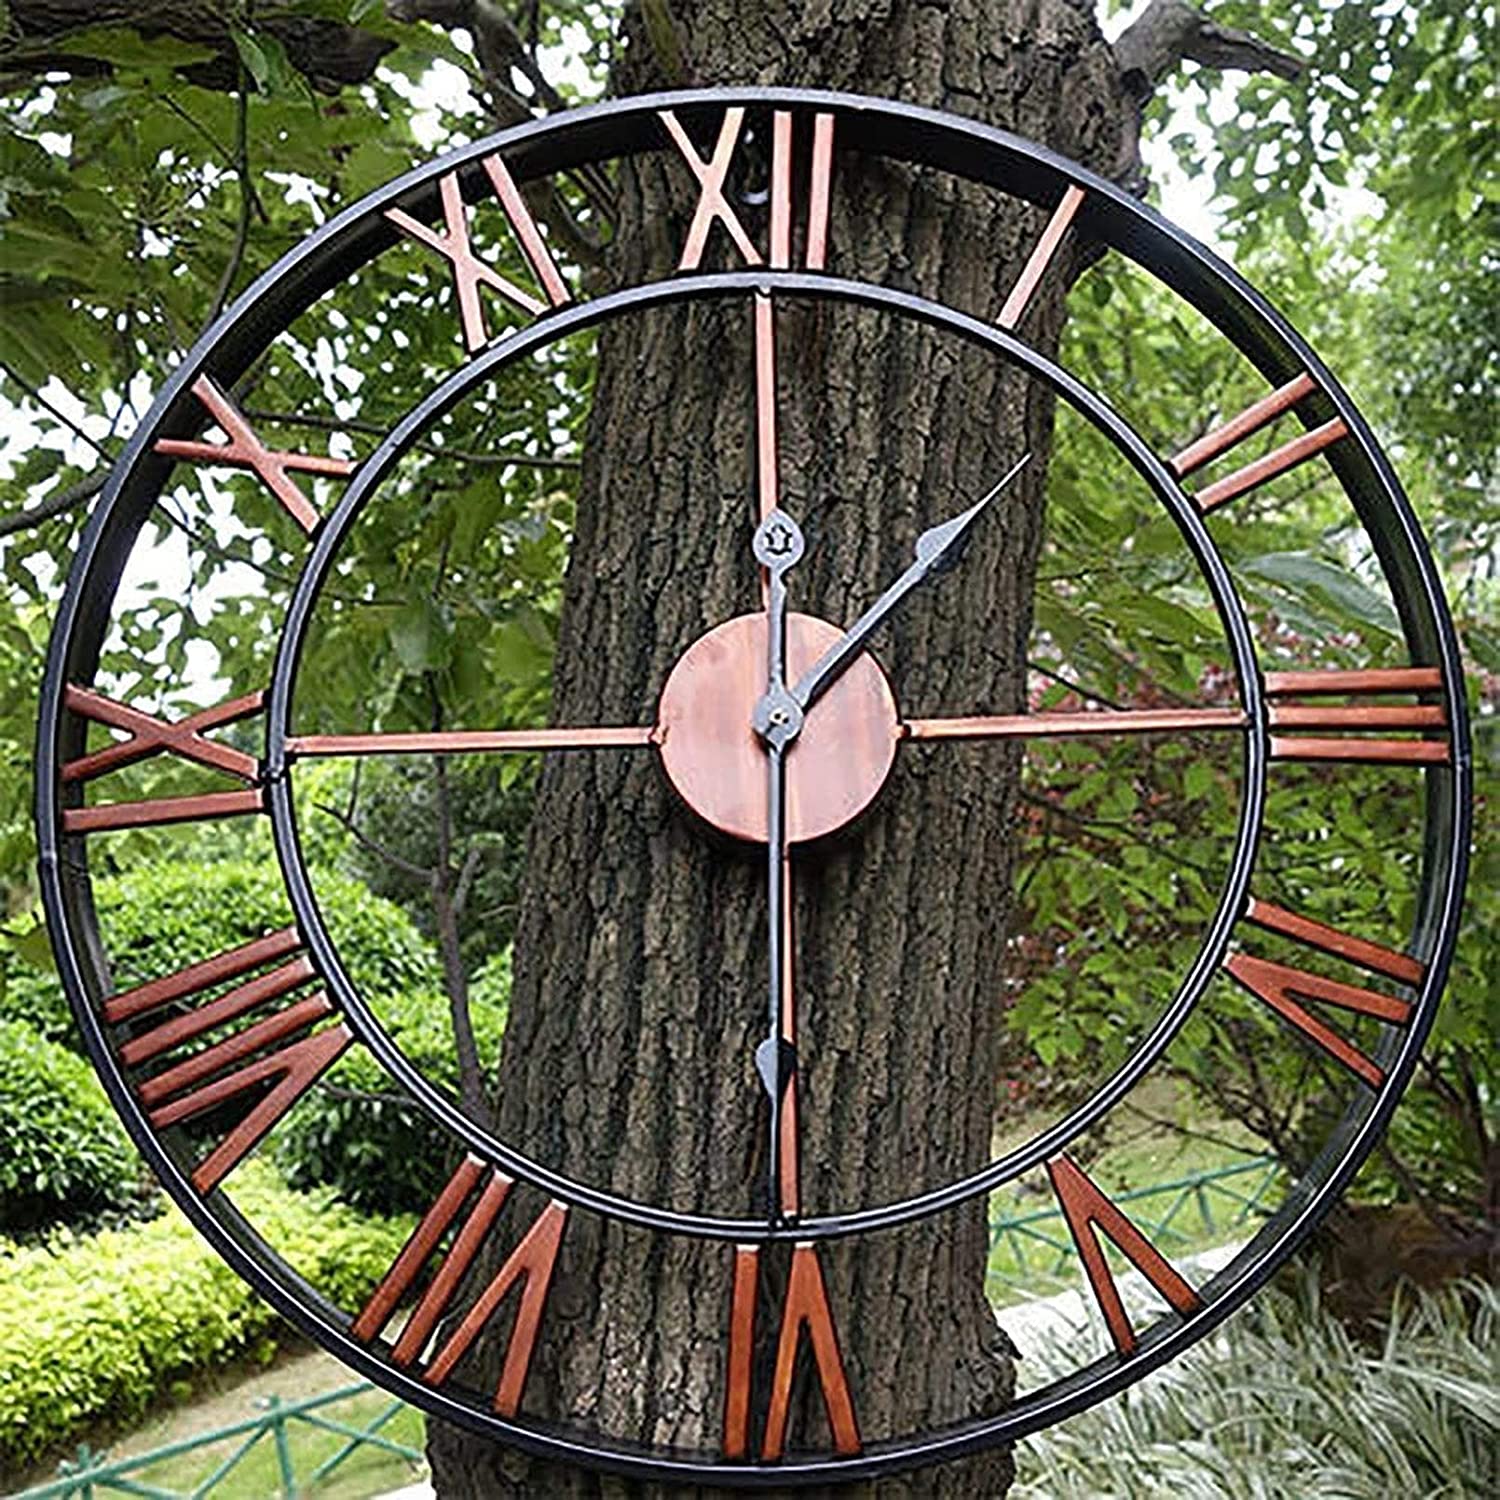 metal clock